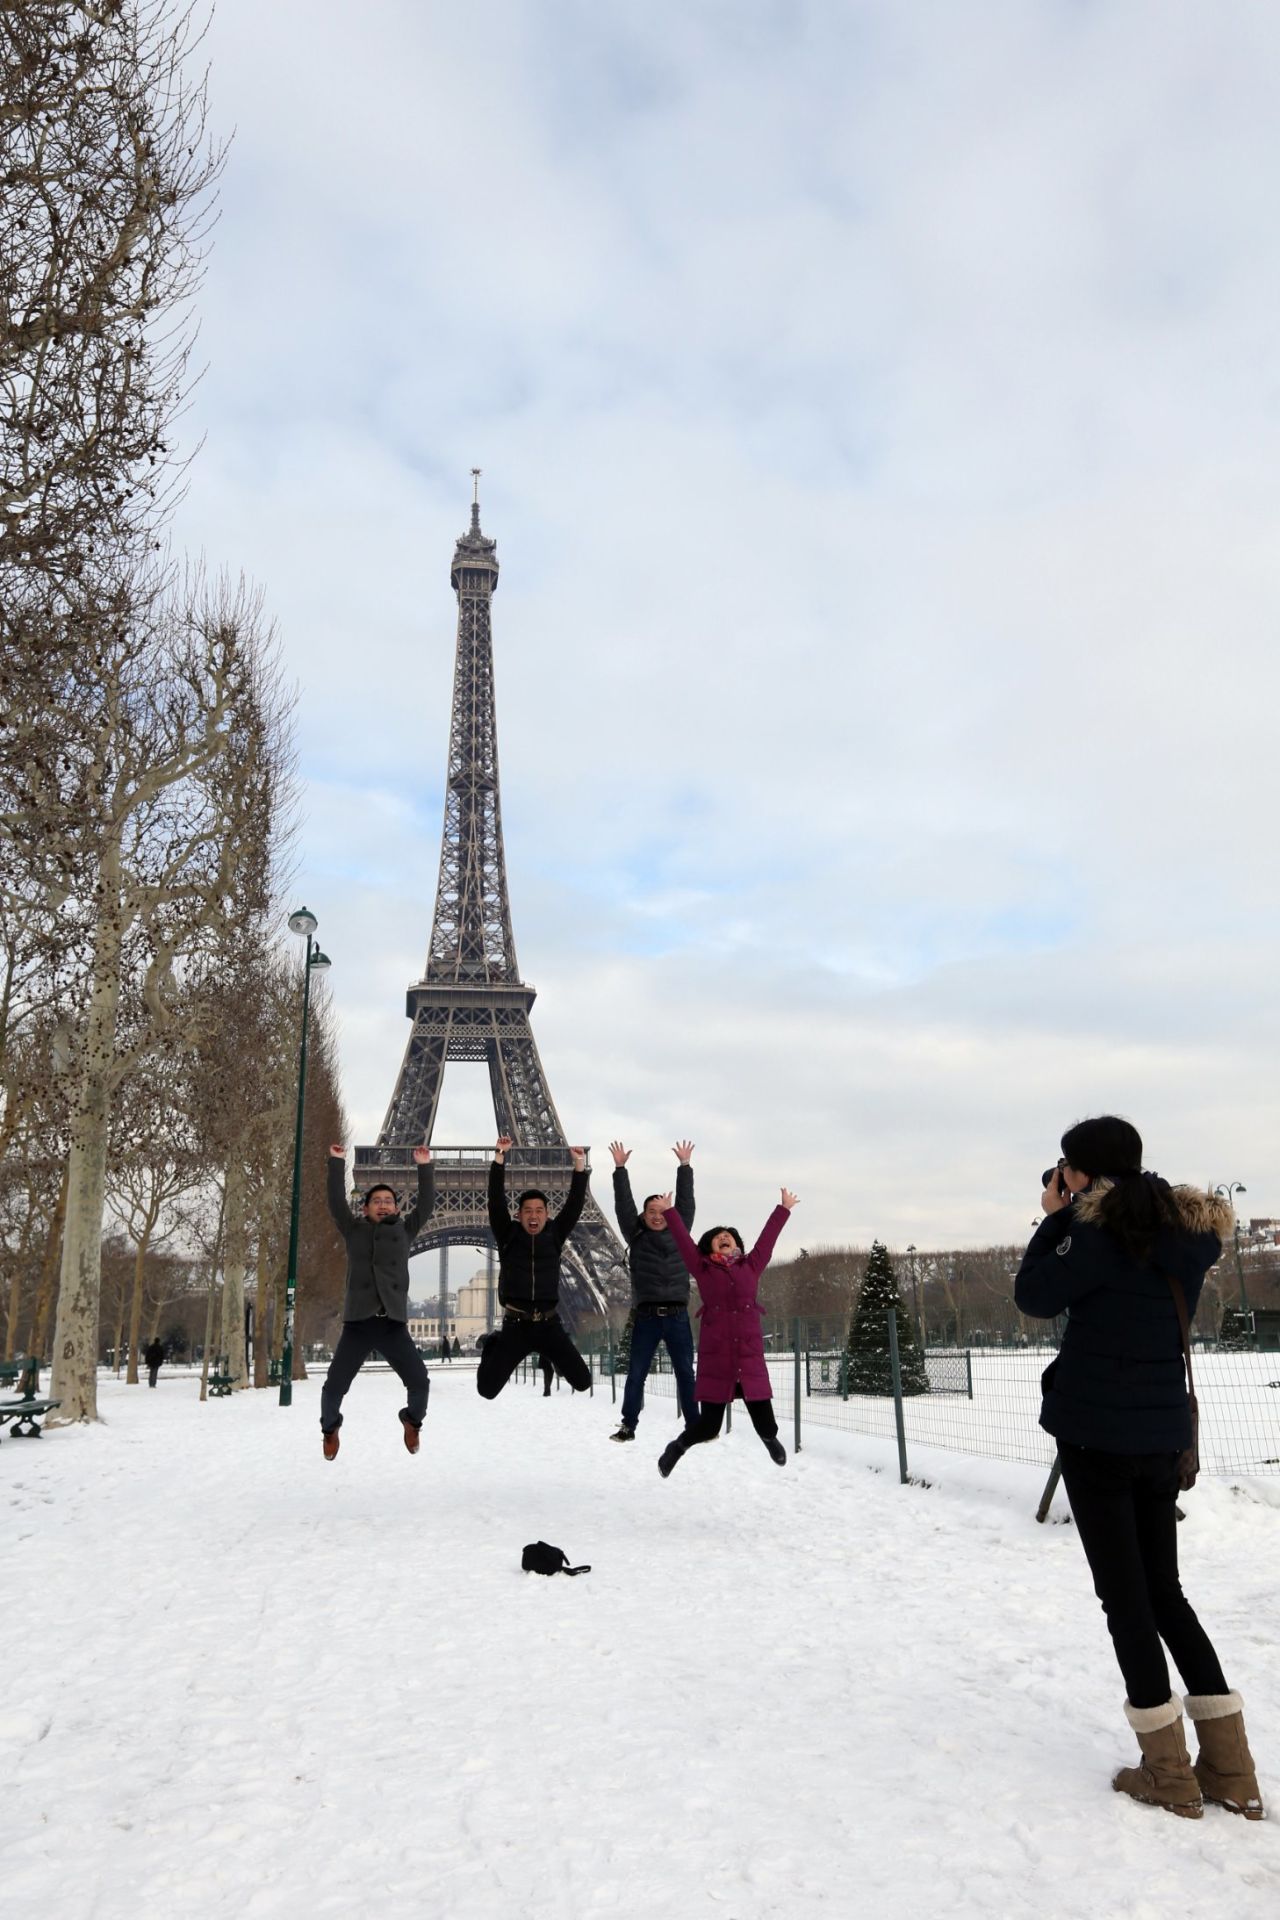 Podrían ser necesarias 50 tomas para capturar el momento perfecto en el aire, pero tomarse fotos saltando es el derecho de un turista, al igual que simular sujetar la Torre de Pisa y poner la yema del dedo sobre la Torre Eiffel. 